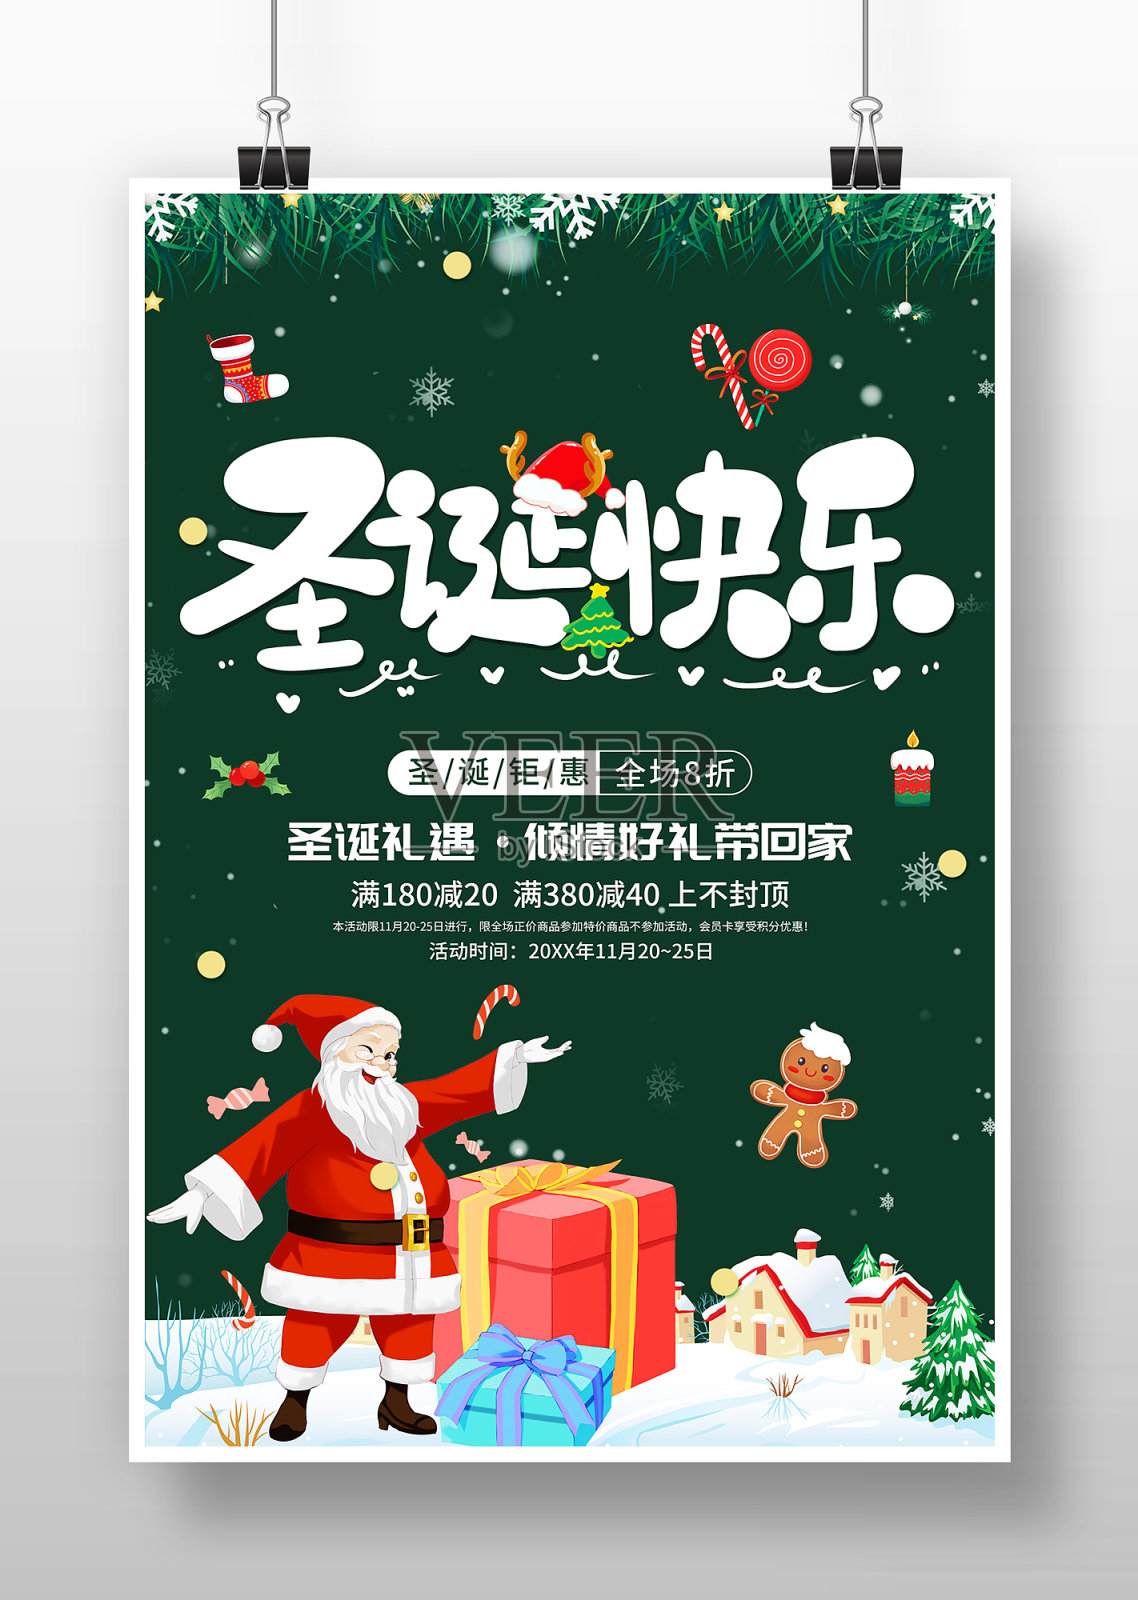 卡通插画风圣诞快乐圣诞节促销海报设计模板素材